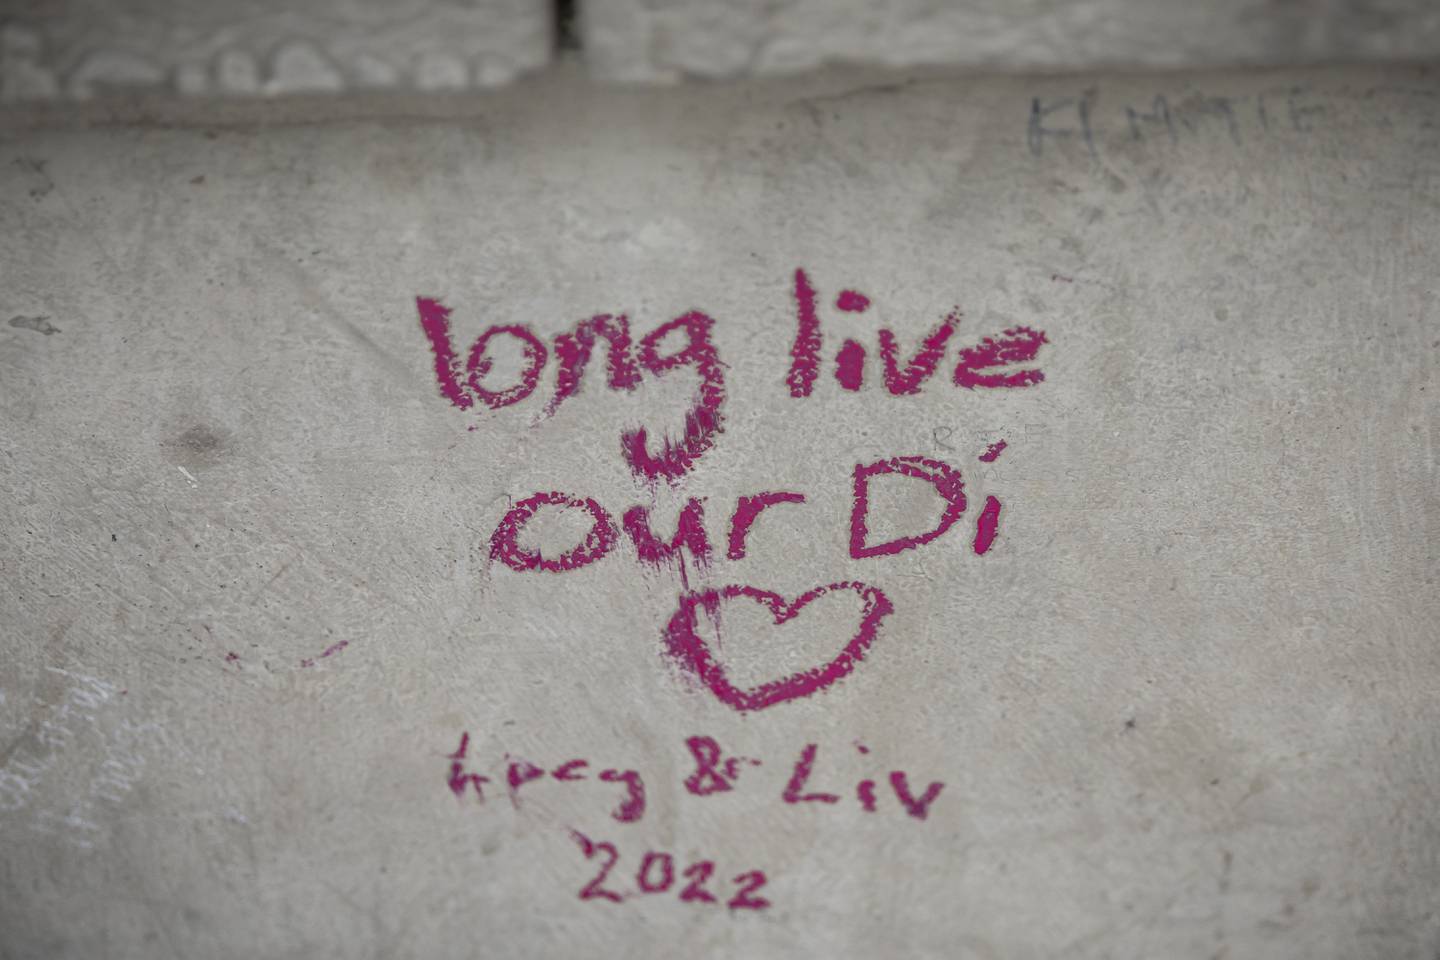 Et budskap skrevet ned på en vegg nær minnestedet i Paris. Lenge leve vår Di, står det skrevet der. Foto: Aurélien Morissard / AP / NTB